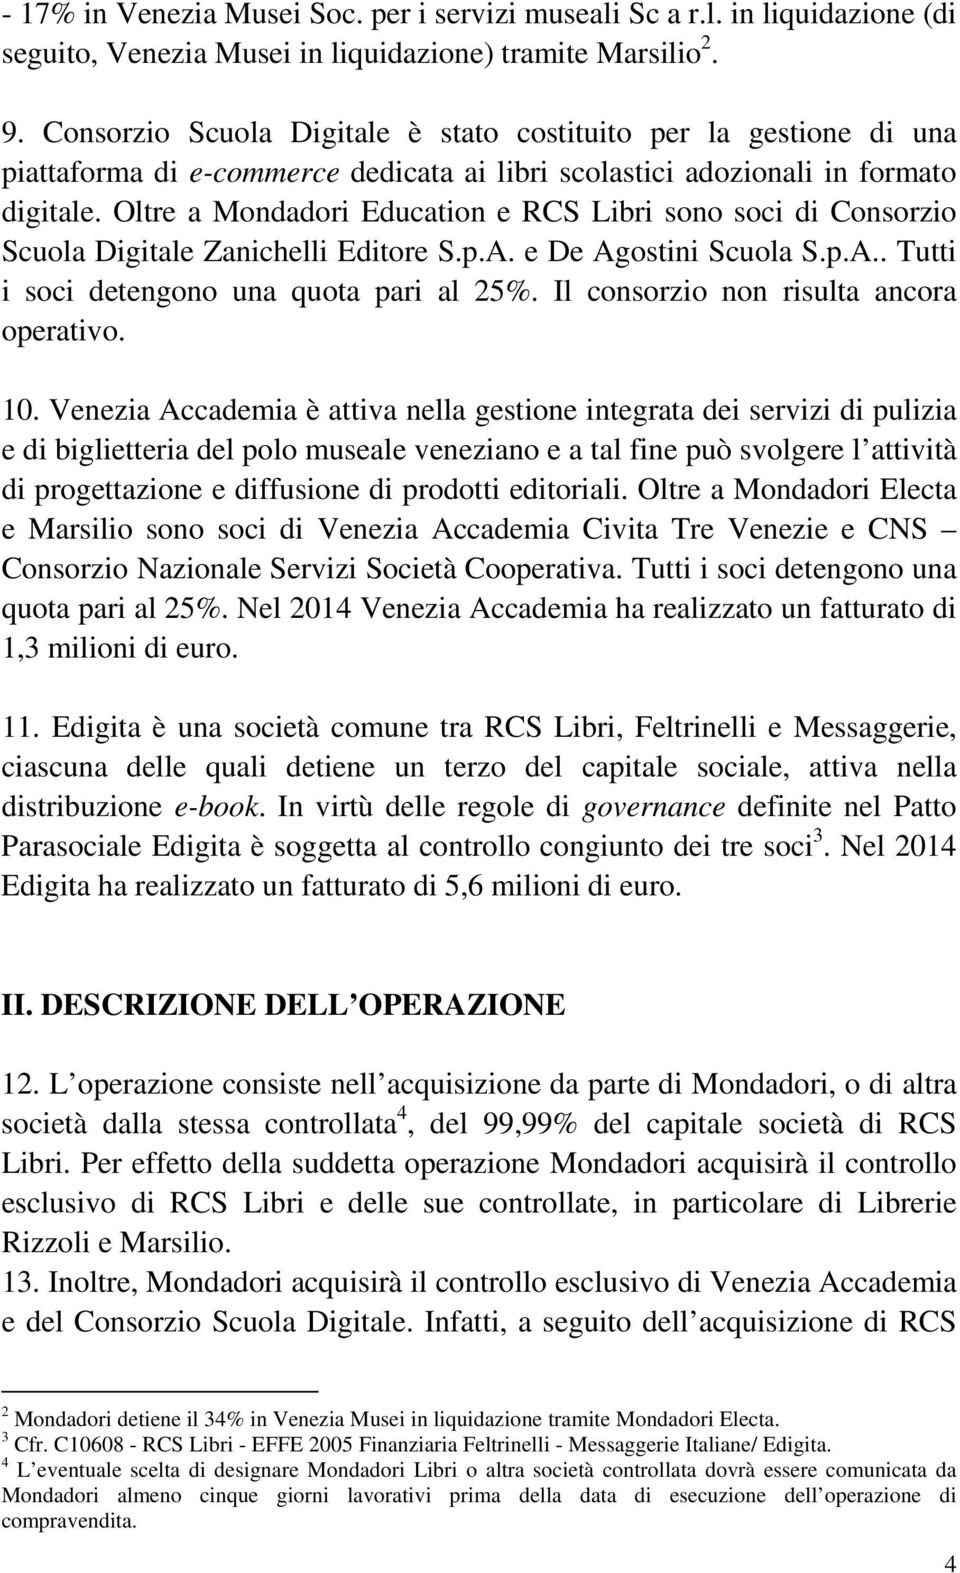 Oltre a Mondadori Education e RCS Libri sono soci di Consorzio Scuola Digitale Zanichelli Editore S.p.A. e De Agostini Scuola S.p.A.. Tutti i soci detengono una quota pari al 25%.